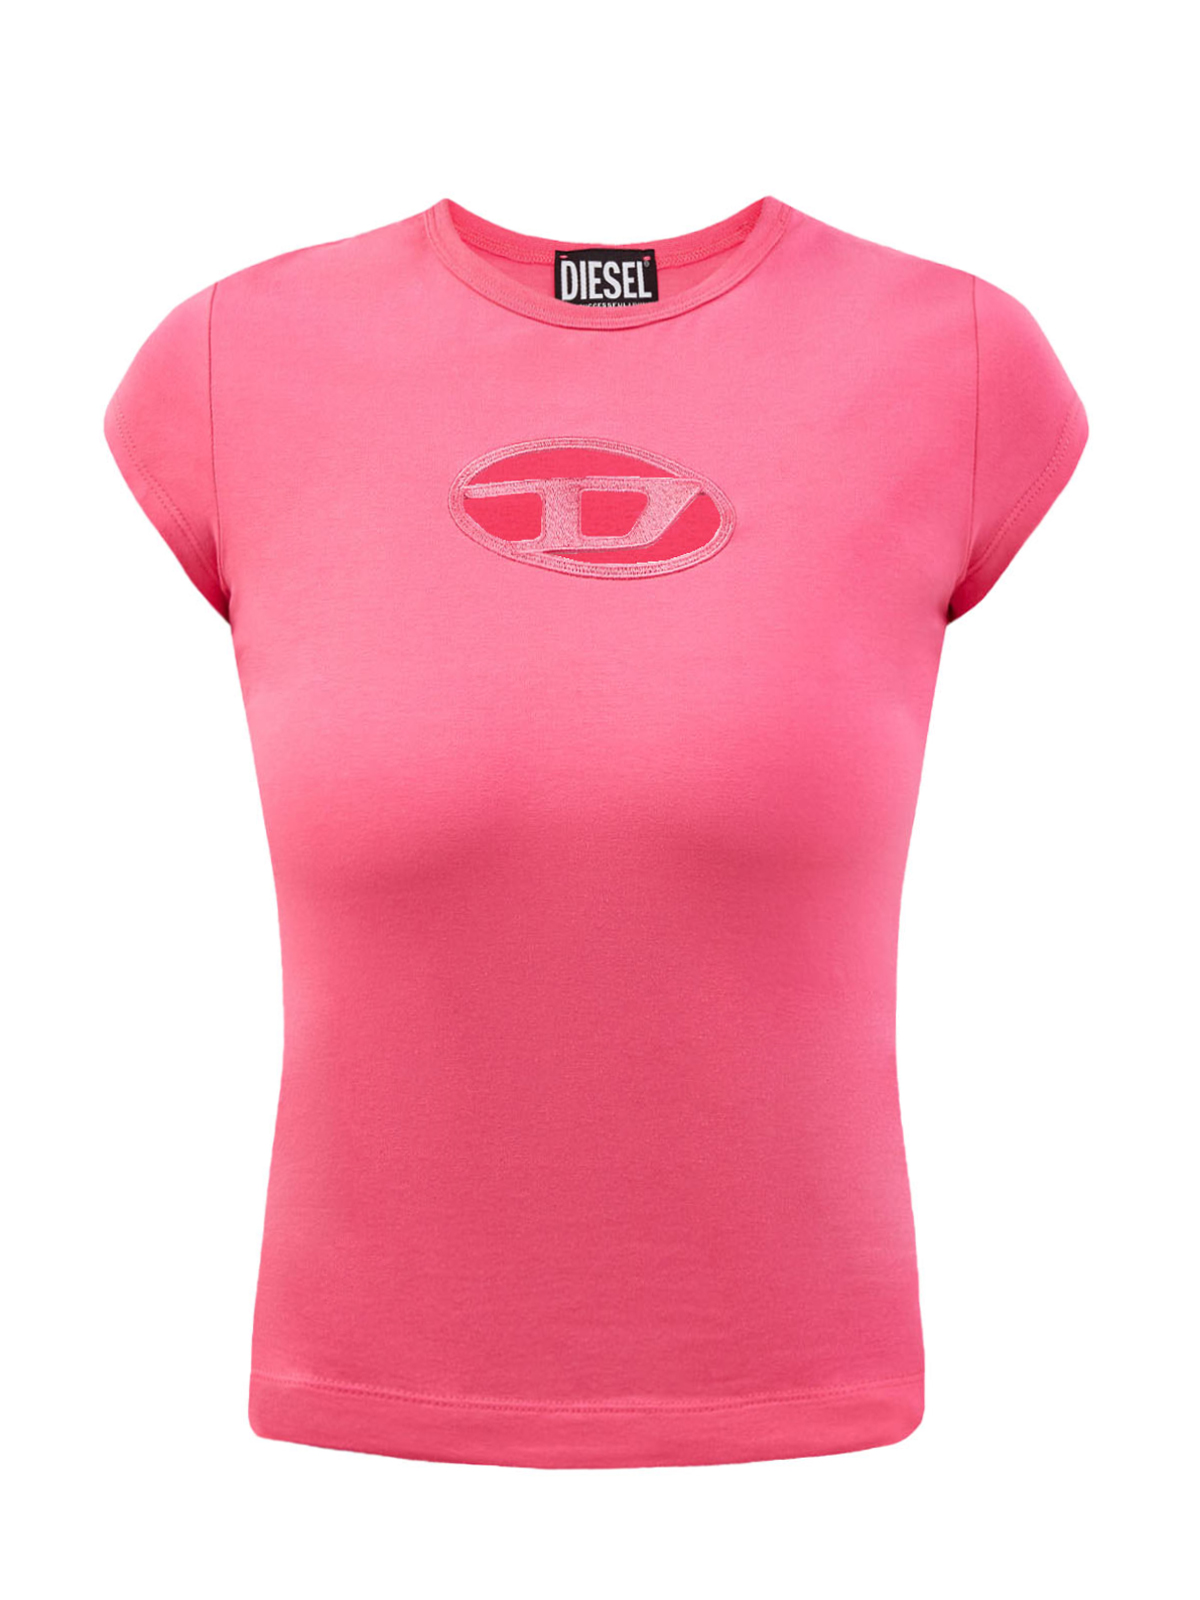 Облегающая футболка T-Angie с логотипом в лазерной технике DIESEL, цвет розовый, размер S - фото 1